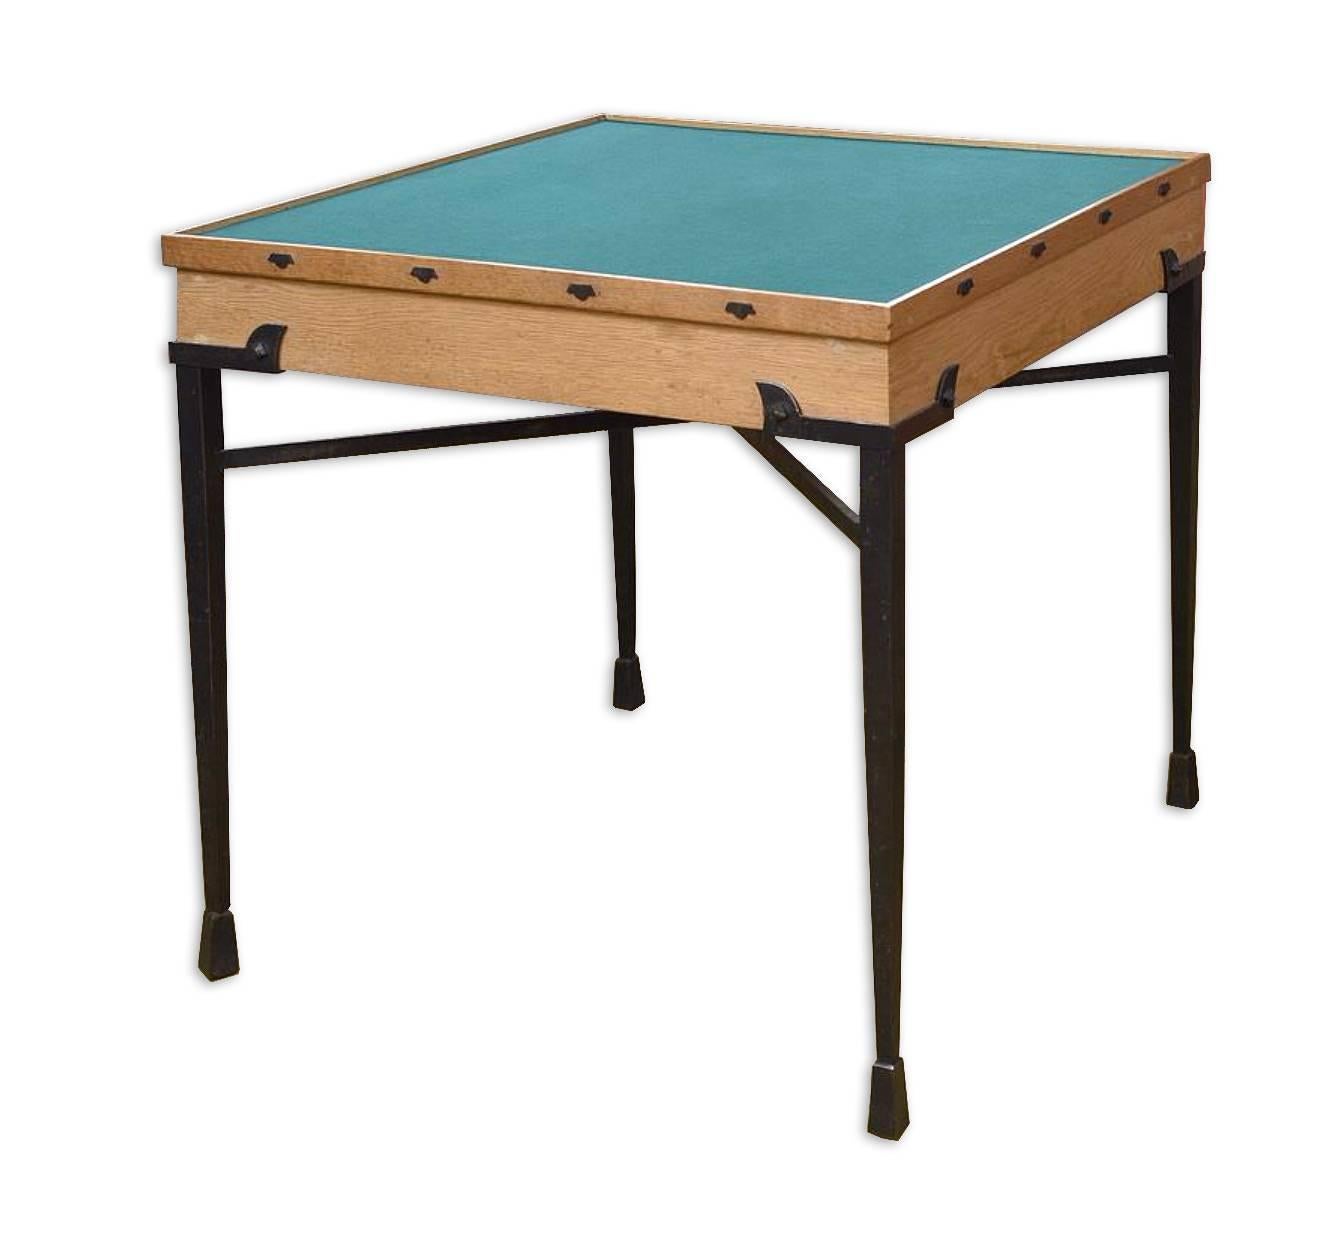 Außergewöhnliches Set von Etienne Kohlmann mit einem Spieltisch und drei Sesseln.
Schwarz lackiertes Eisen und Leder für die Stühle und schwarz lackiertes Eisen, Eiche und grüner Samt für den Spieltisch.
Maße: Spieltisch: 29